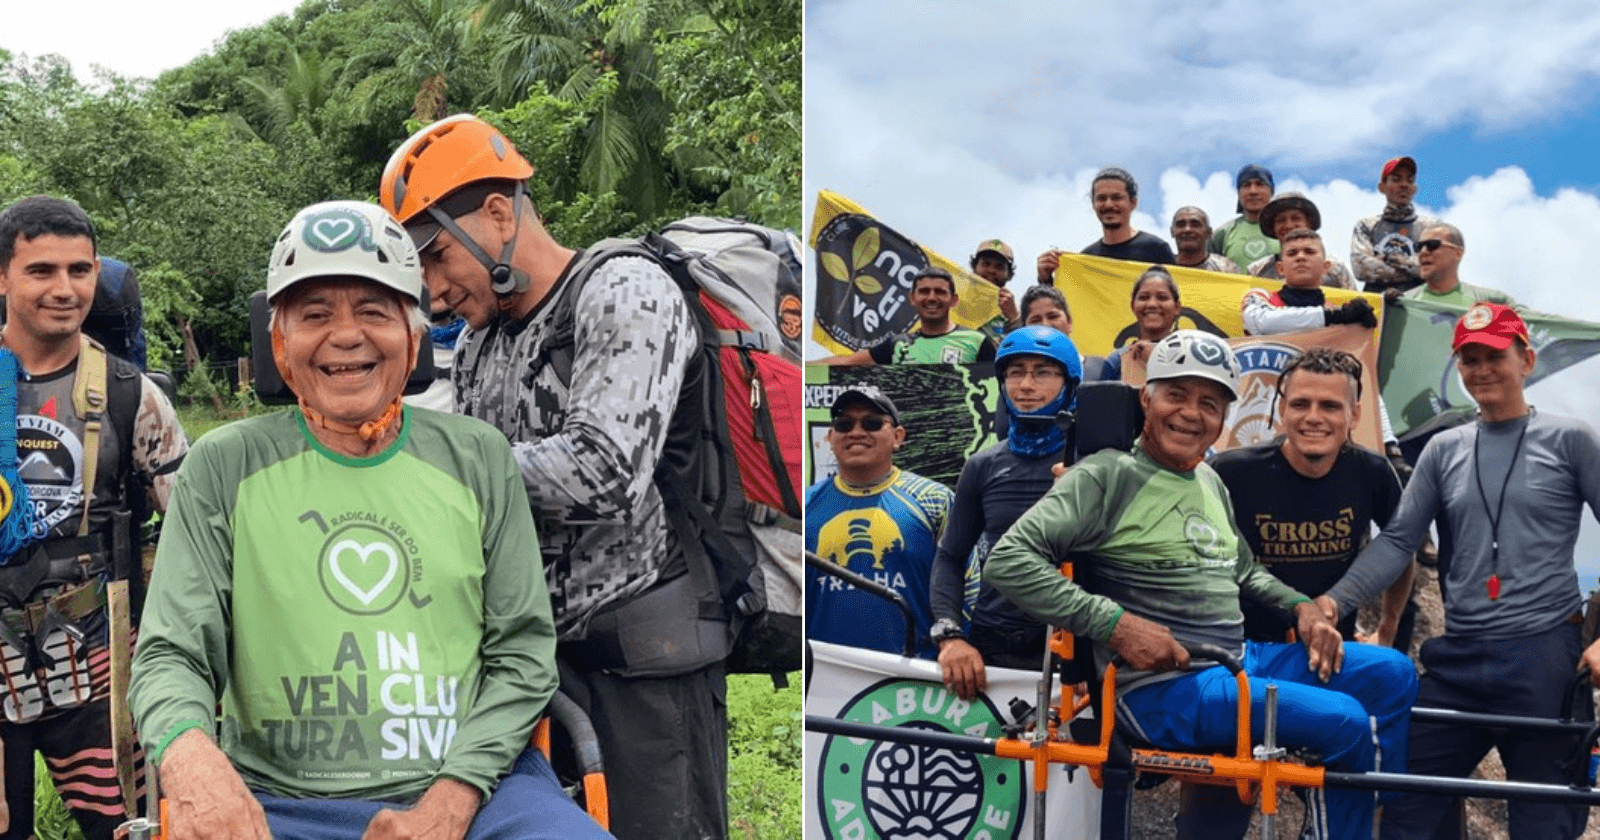 Voluntários ajudam cadeirante a realizar sonho de subir serra